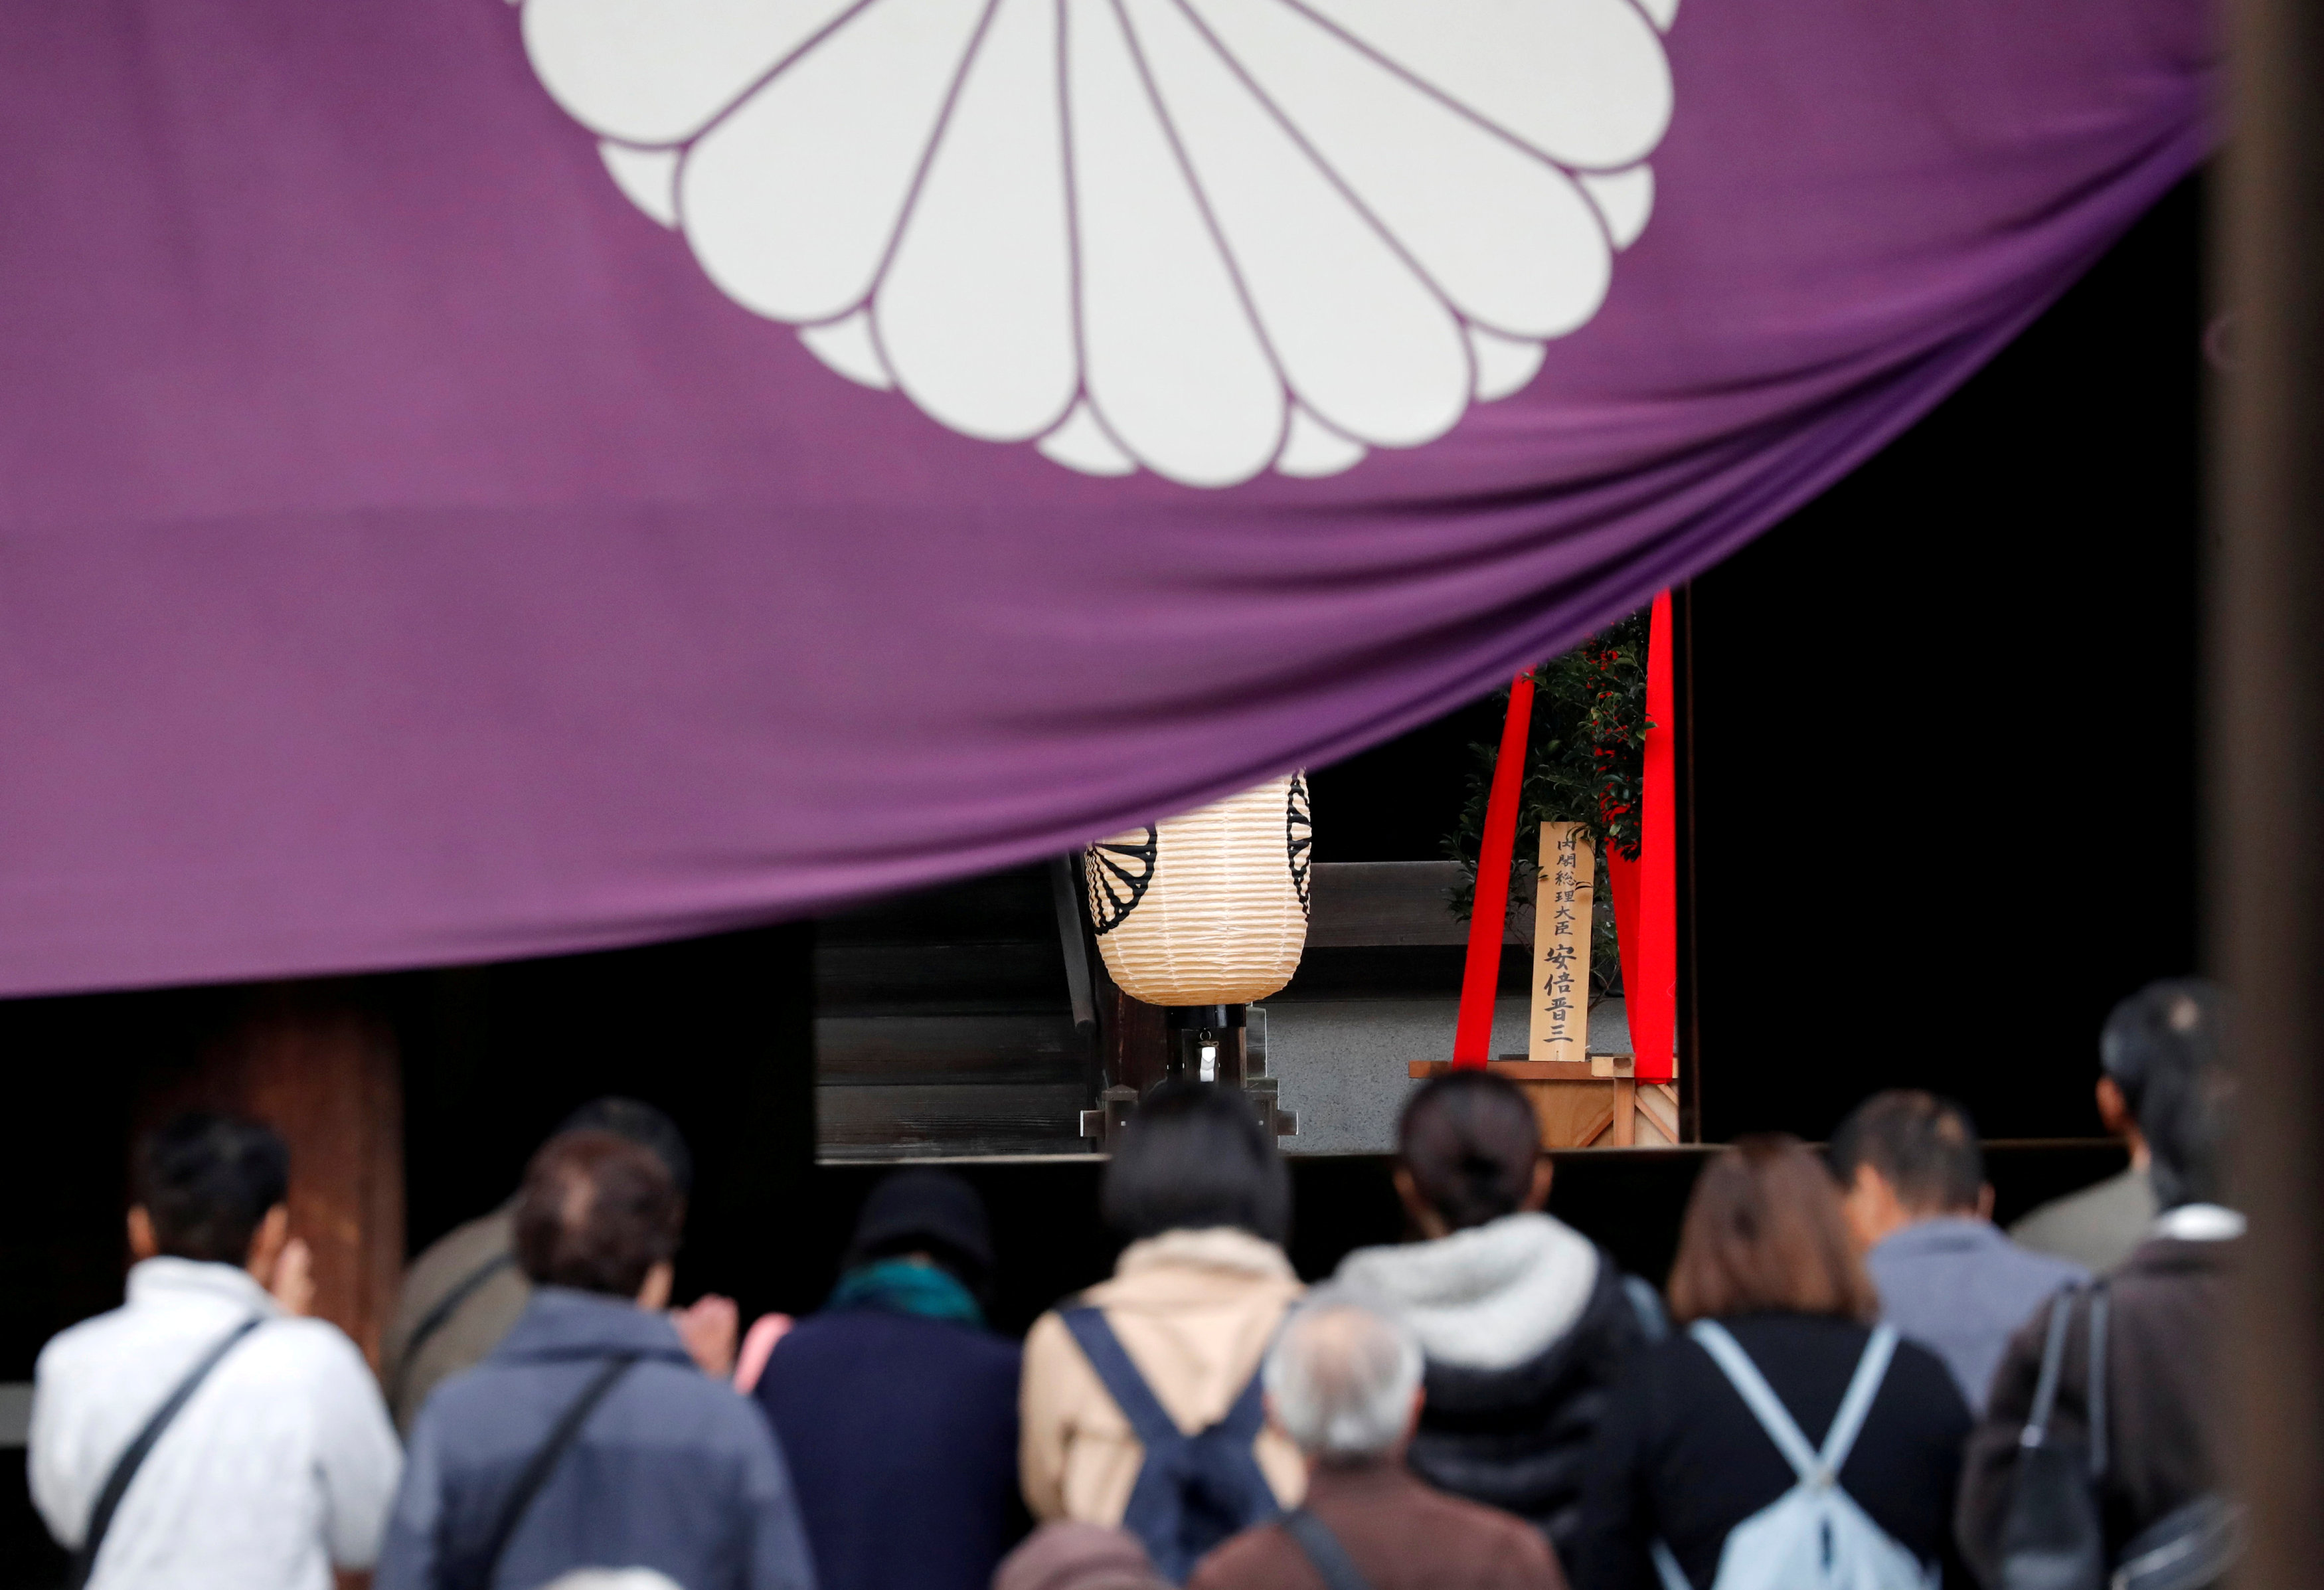 Japanese Prime Minister Shinzo Abe sends ritual offering to Yasukuni shrine for war dead